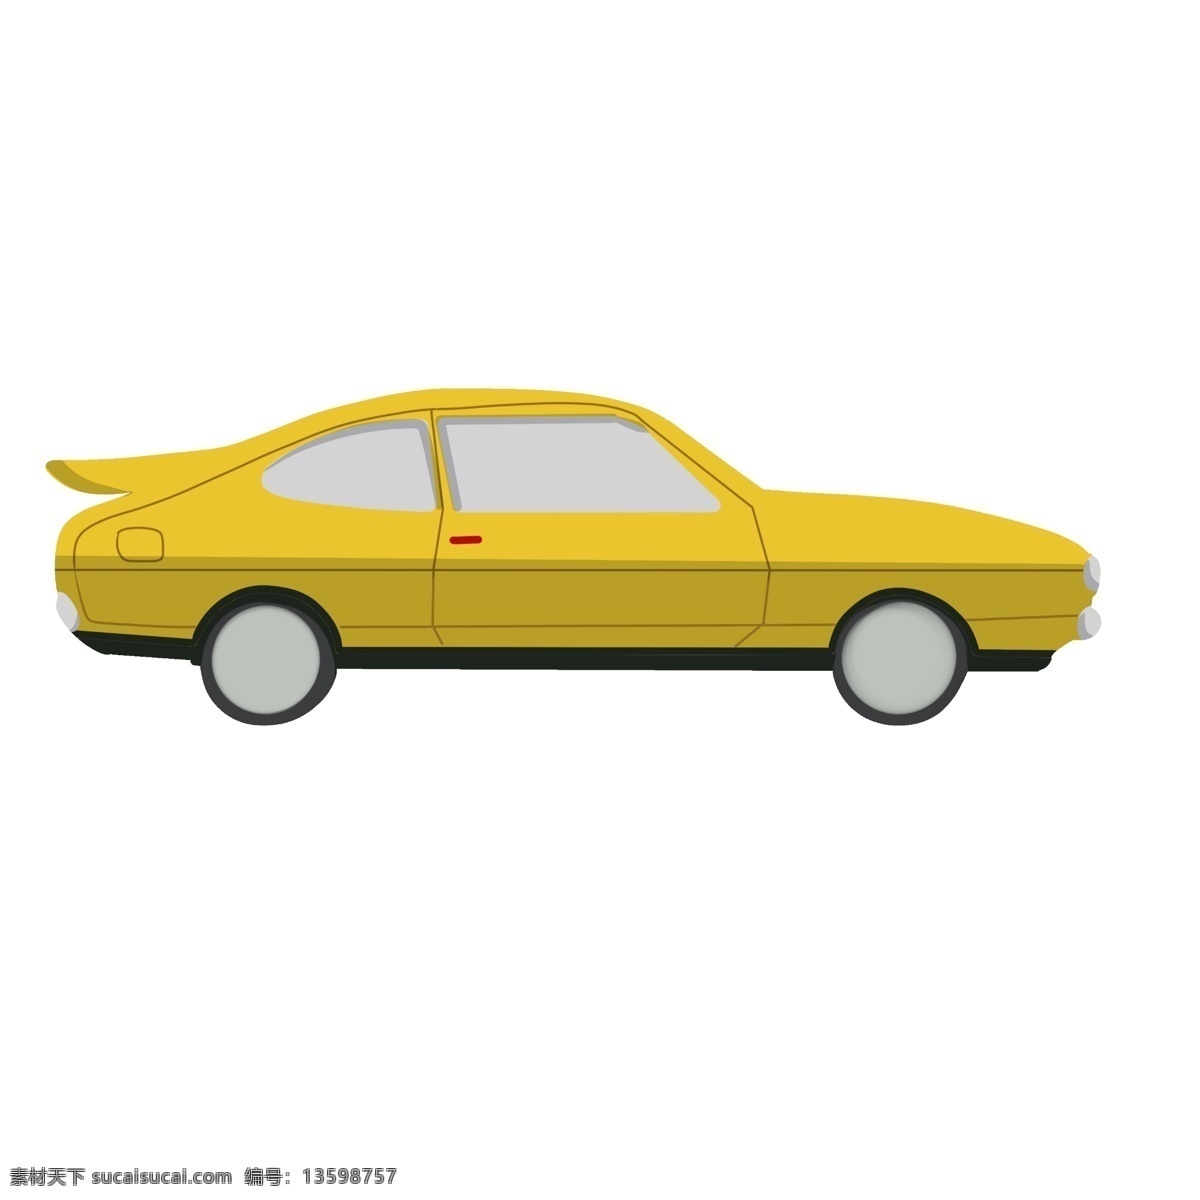 黄色 超 跑 汽车 插画 黄色的汽车 卡通插画 交通工具 运输工具 汽车插画 进口汽车 超跑小汽车